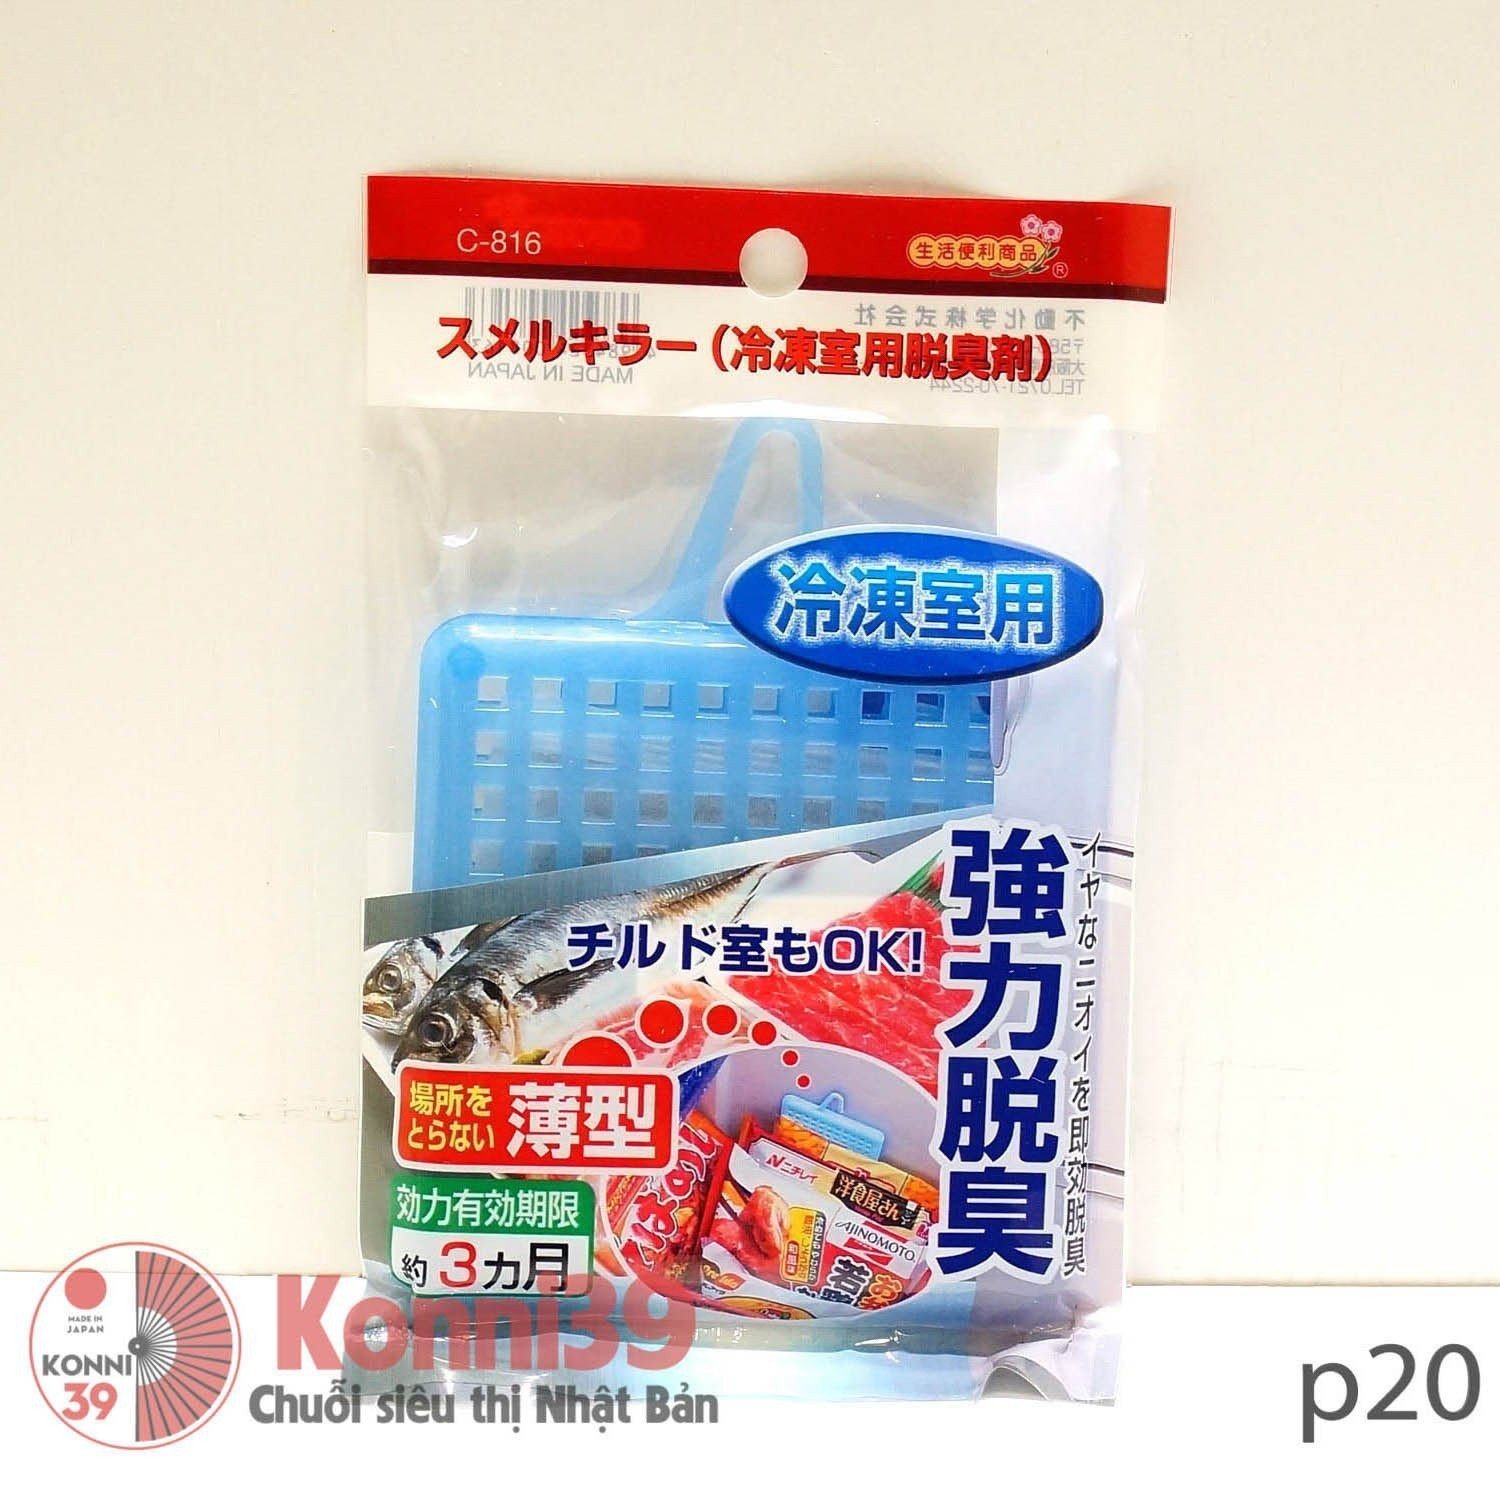 Vỉ hút mùi thịt, cá tủ lạnh SANADA-Chuỗi siêu thị Nhật Bản - MADE IN JAPAN Konni39 tại Việt Nam